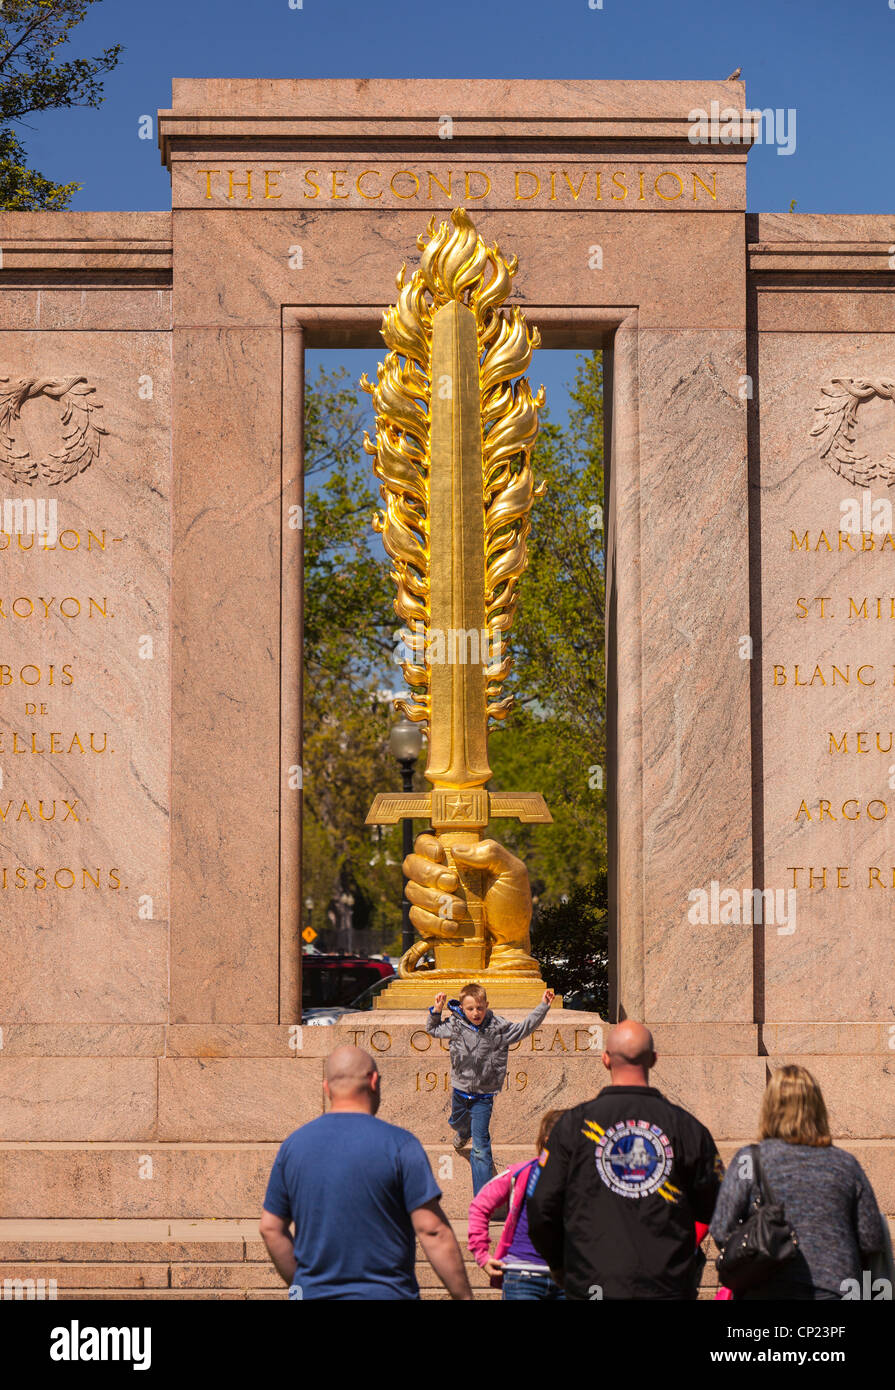 WASHINGTON, DC, USA - Visitors at the Second Division World War I Memorial. Stock Photo